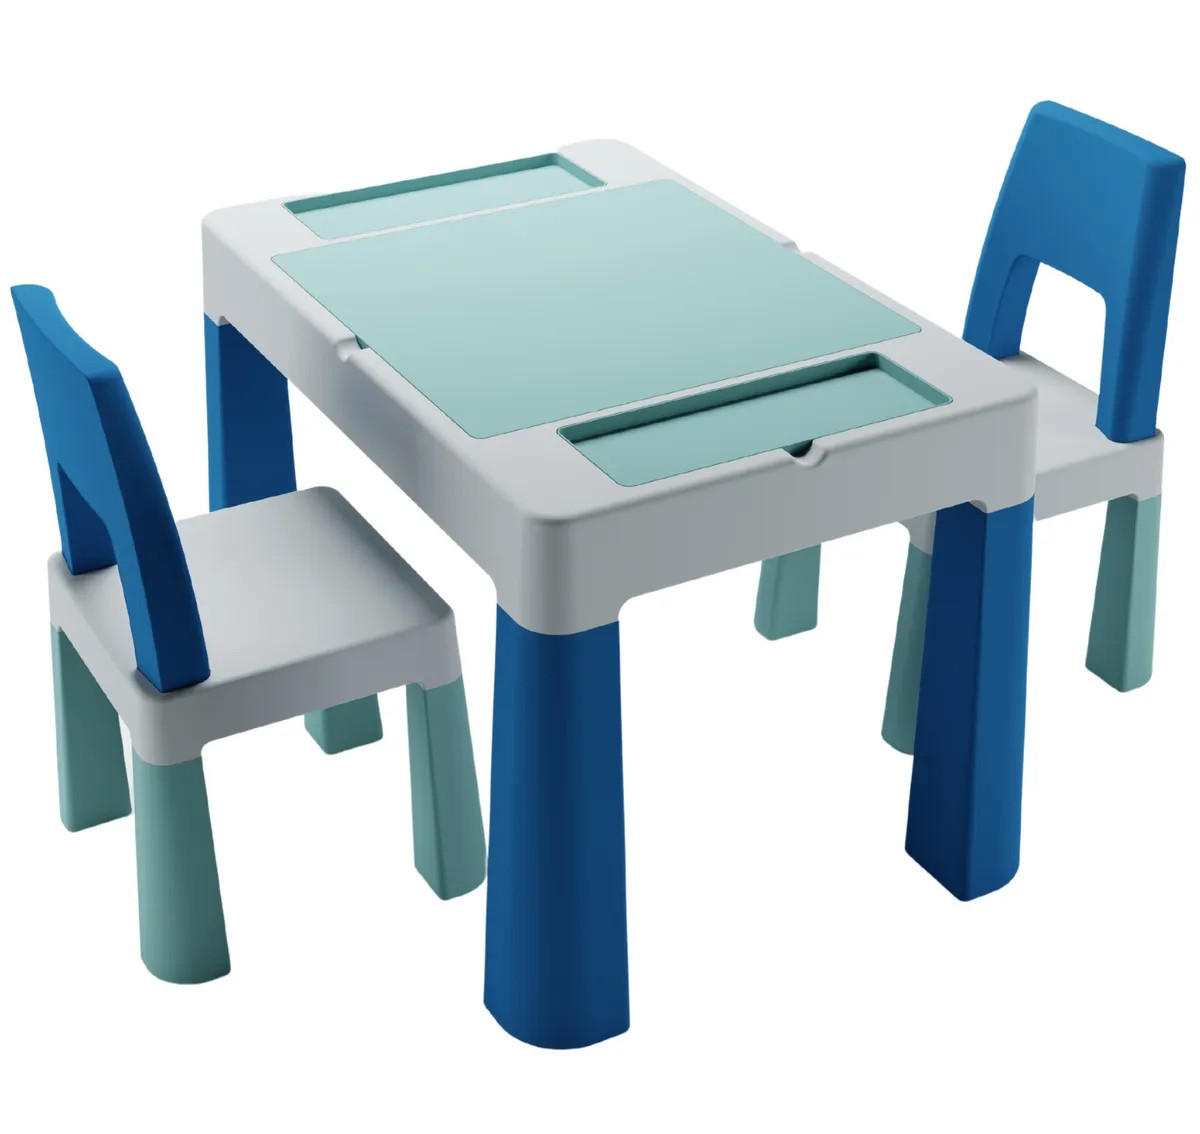 Комплект дитячий Teggi Multifun 1+2 (столик і 2 стільці), turguoise/grey, бірюза/сірий